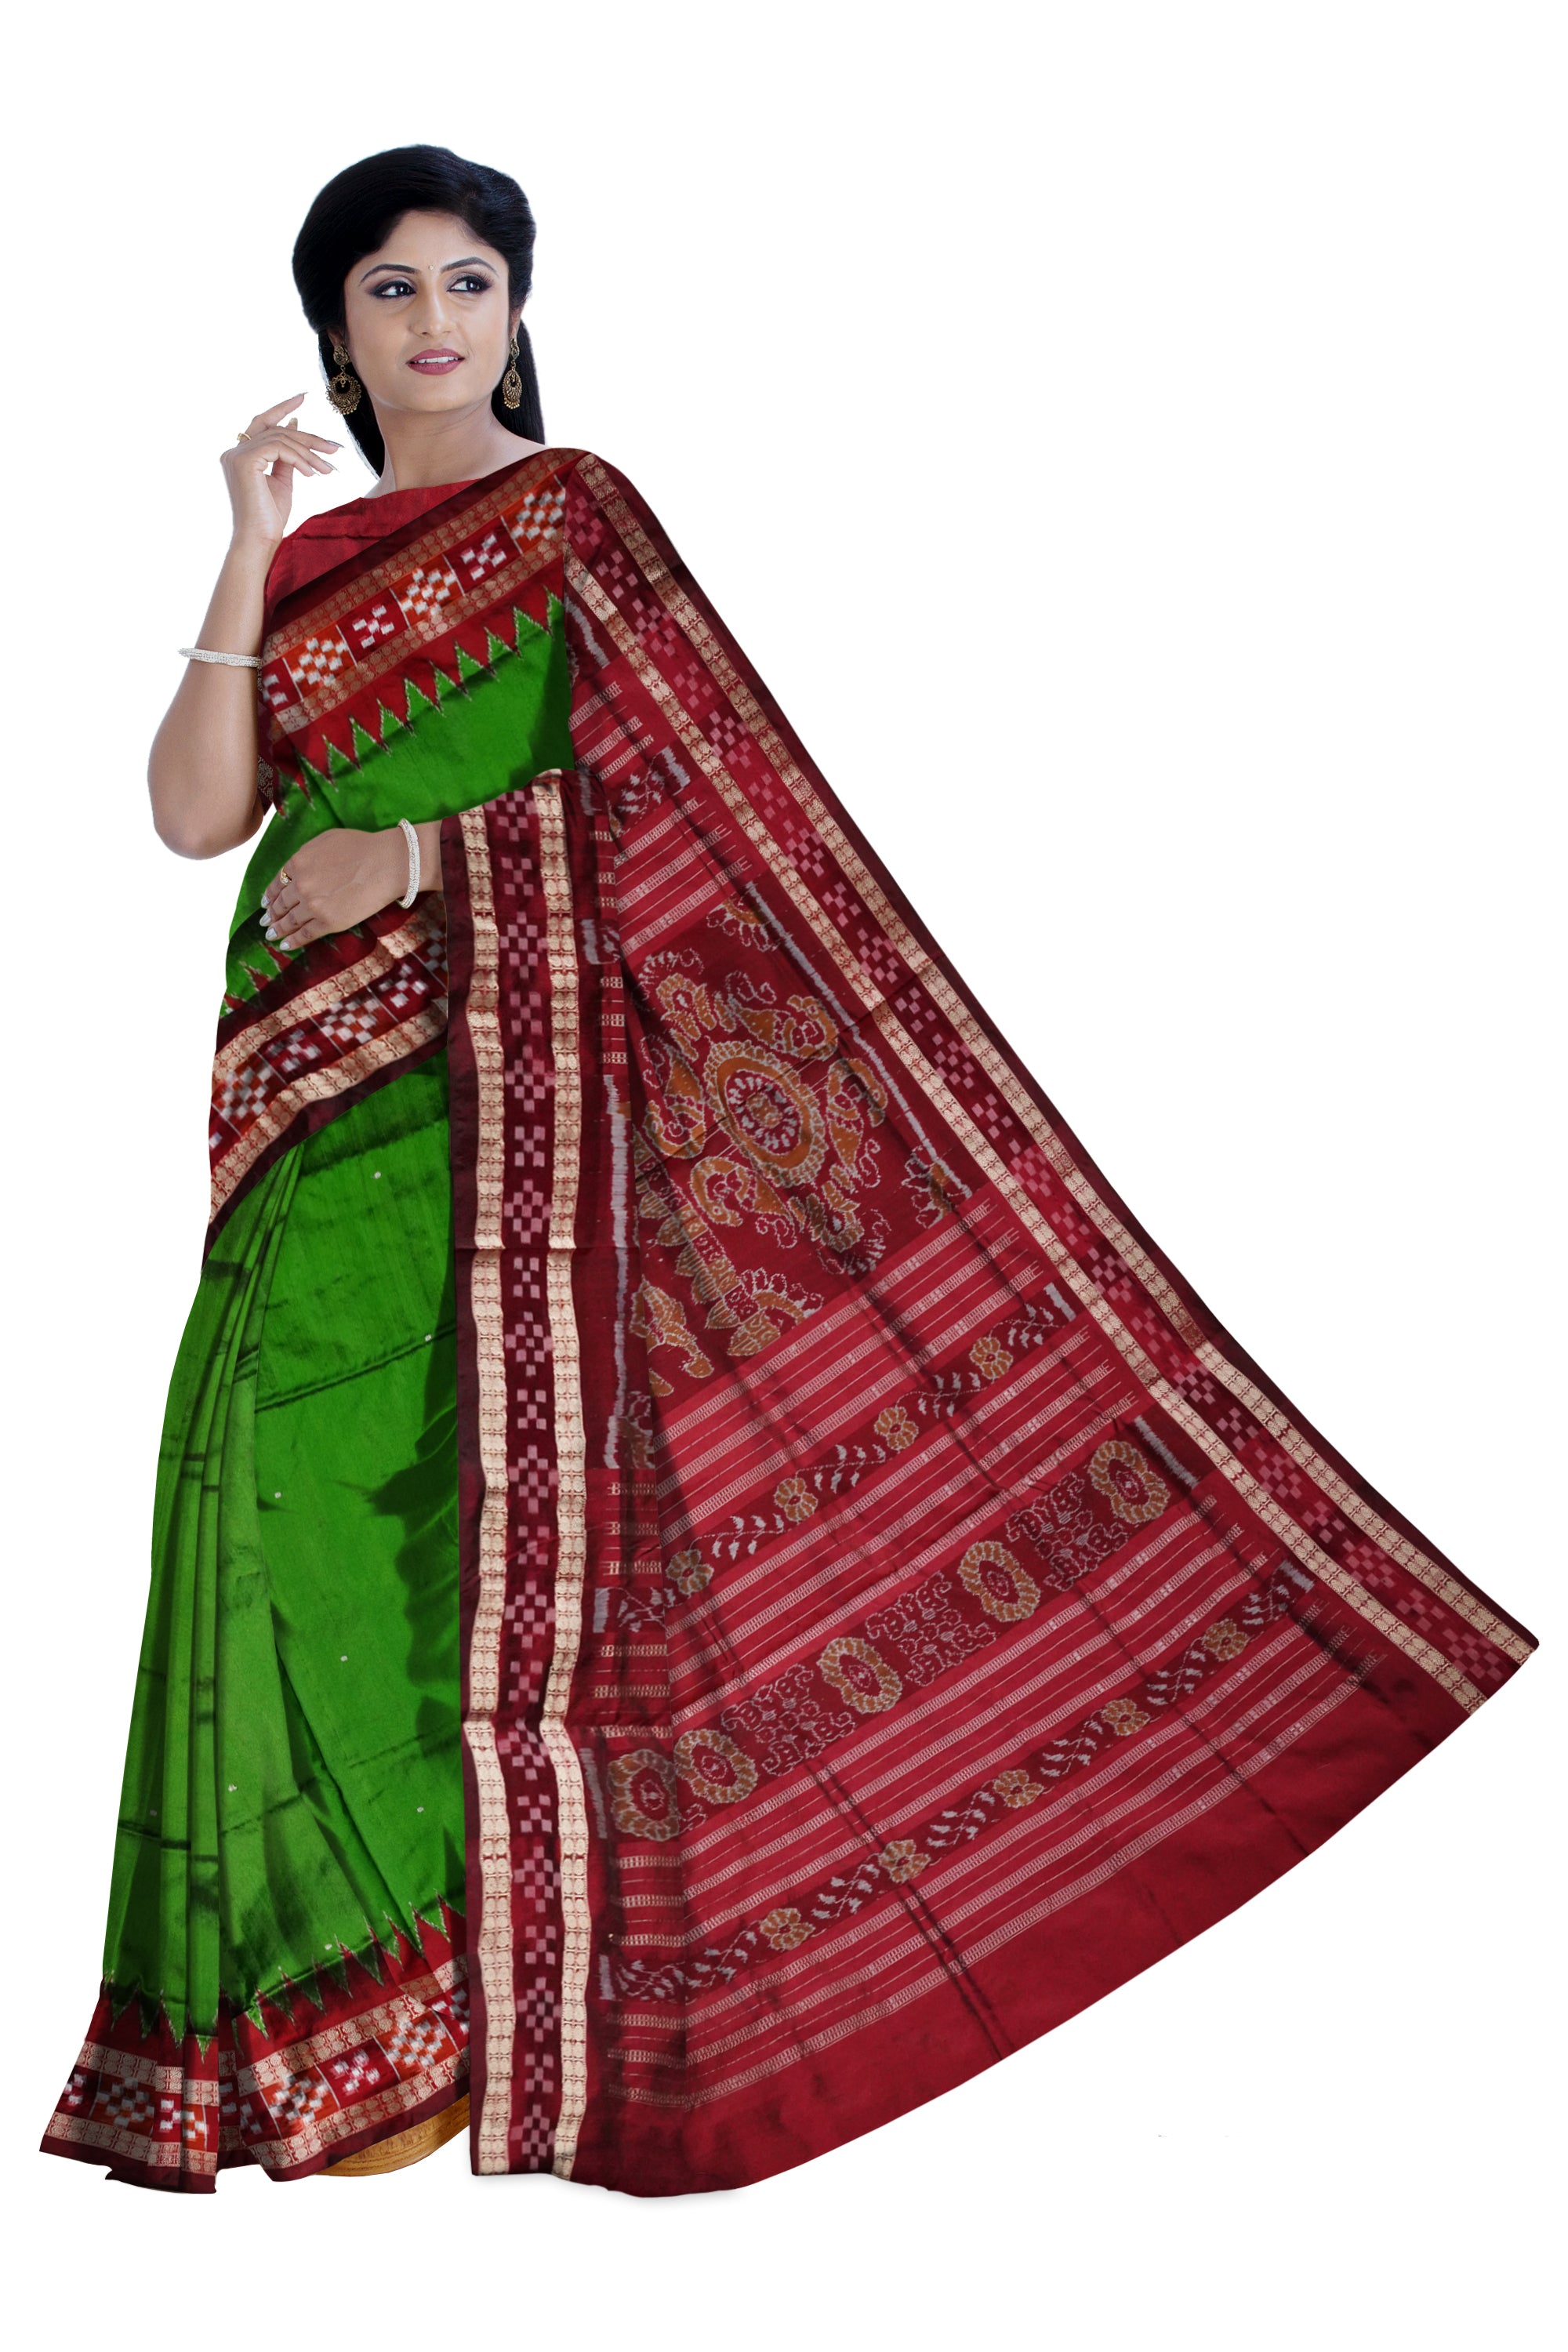 Pasapali border plain pata saree is  green and maroon color. - Koshali Arts & Crafts Enterprise